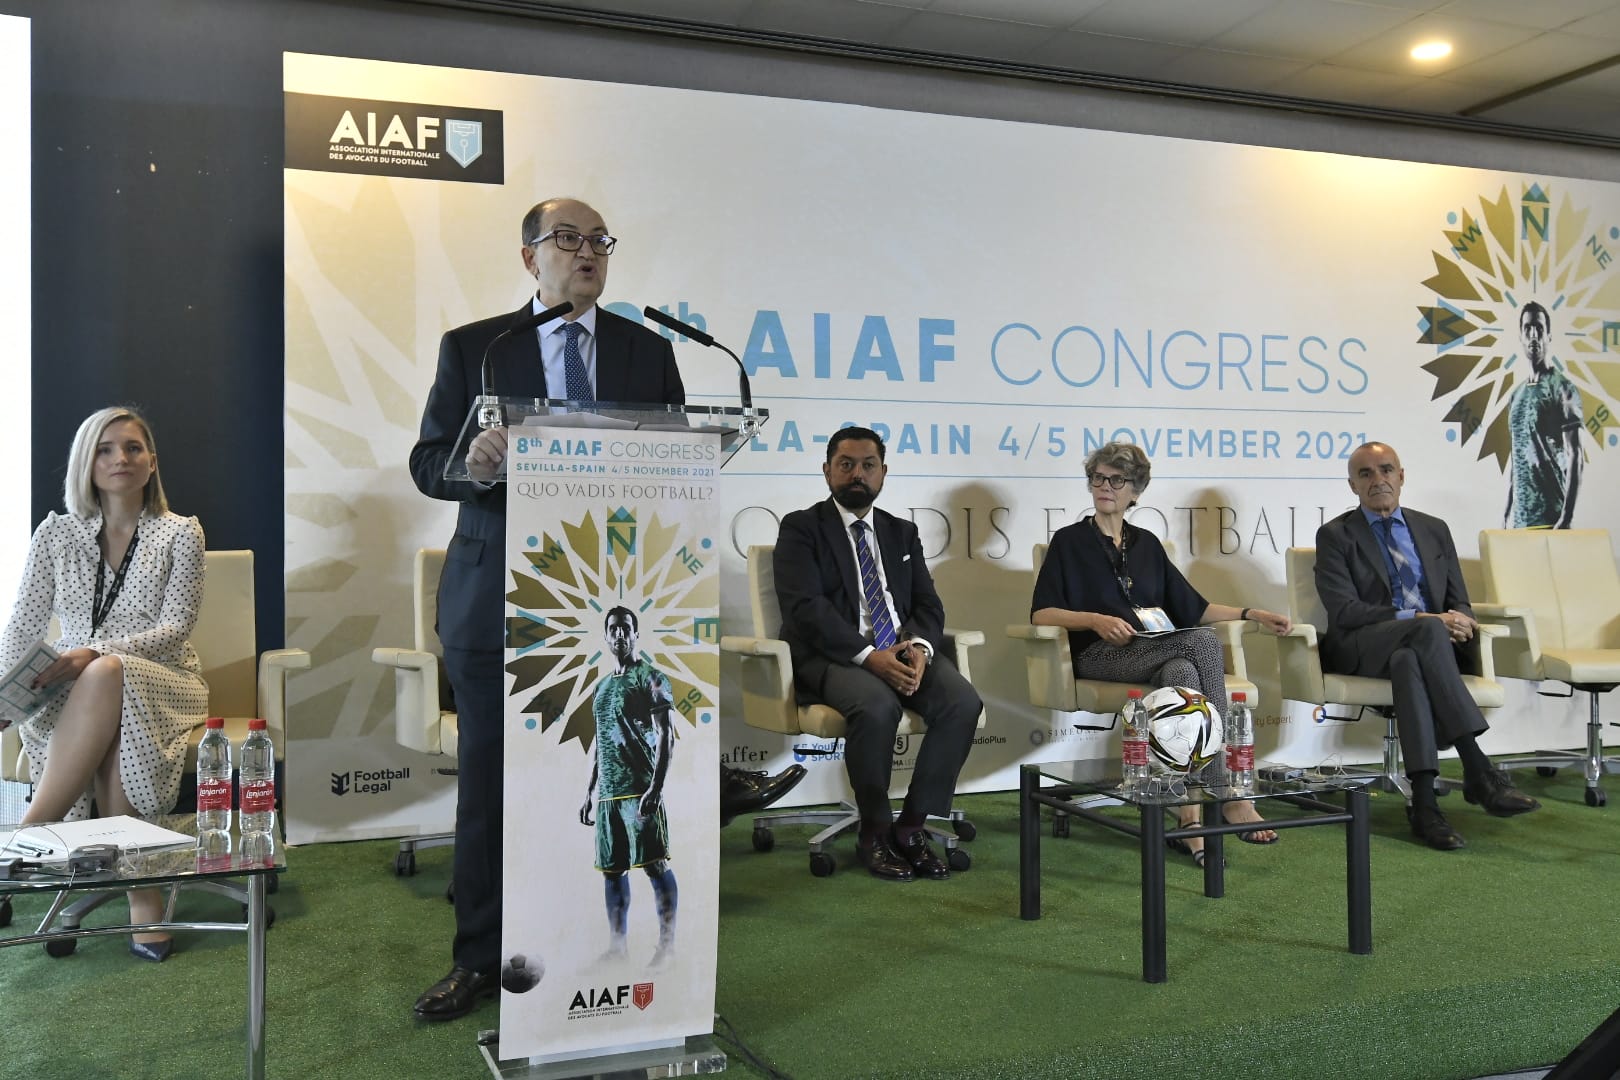 Discurso de José Castro en la inauguración del congreso de la AIAF